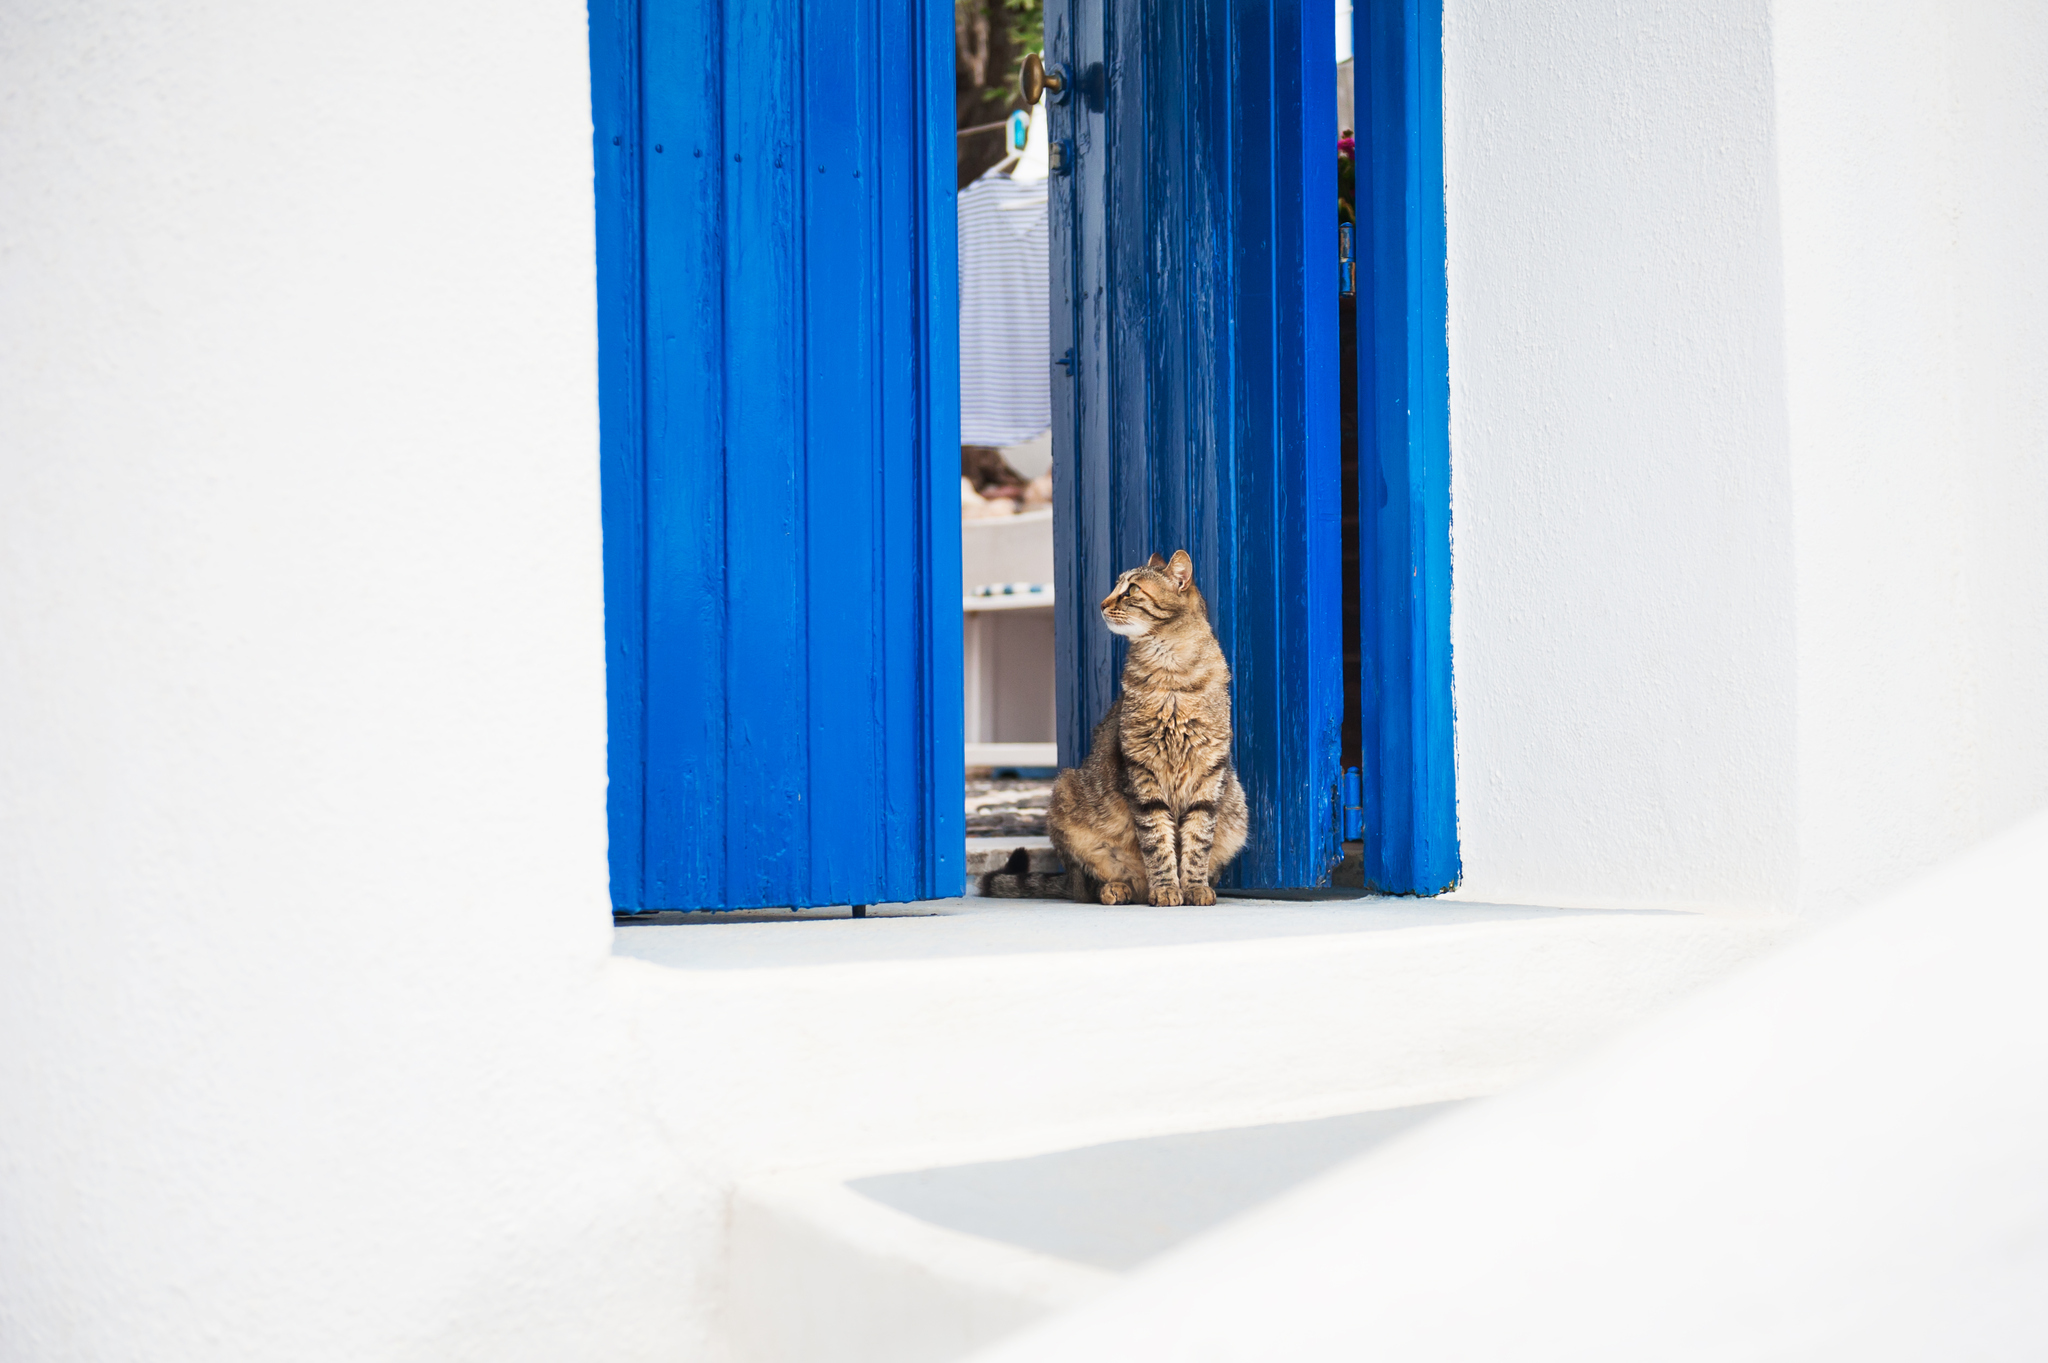 kot siedzący w niebieskich drzwiach na tle białej ściany, gdzieś w grecji, detal